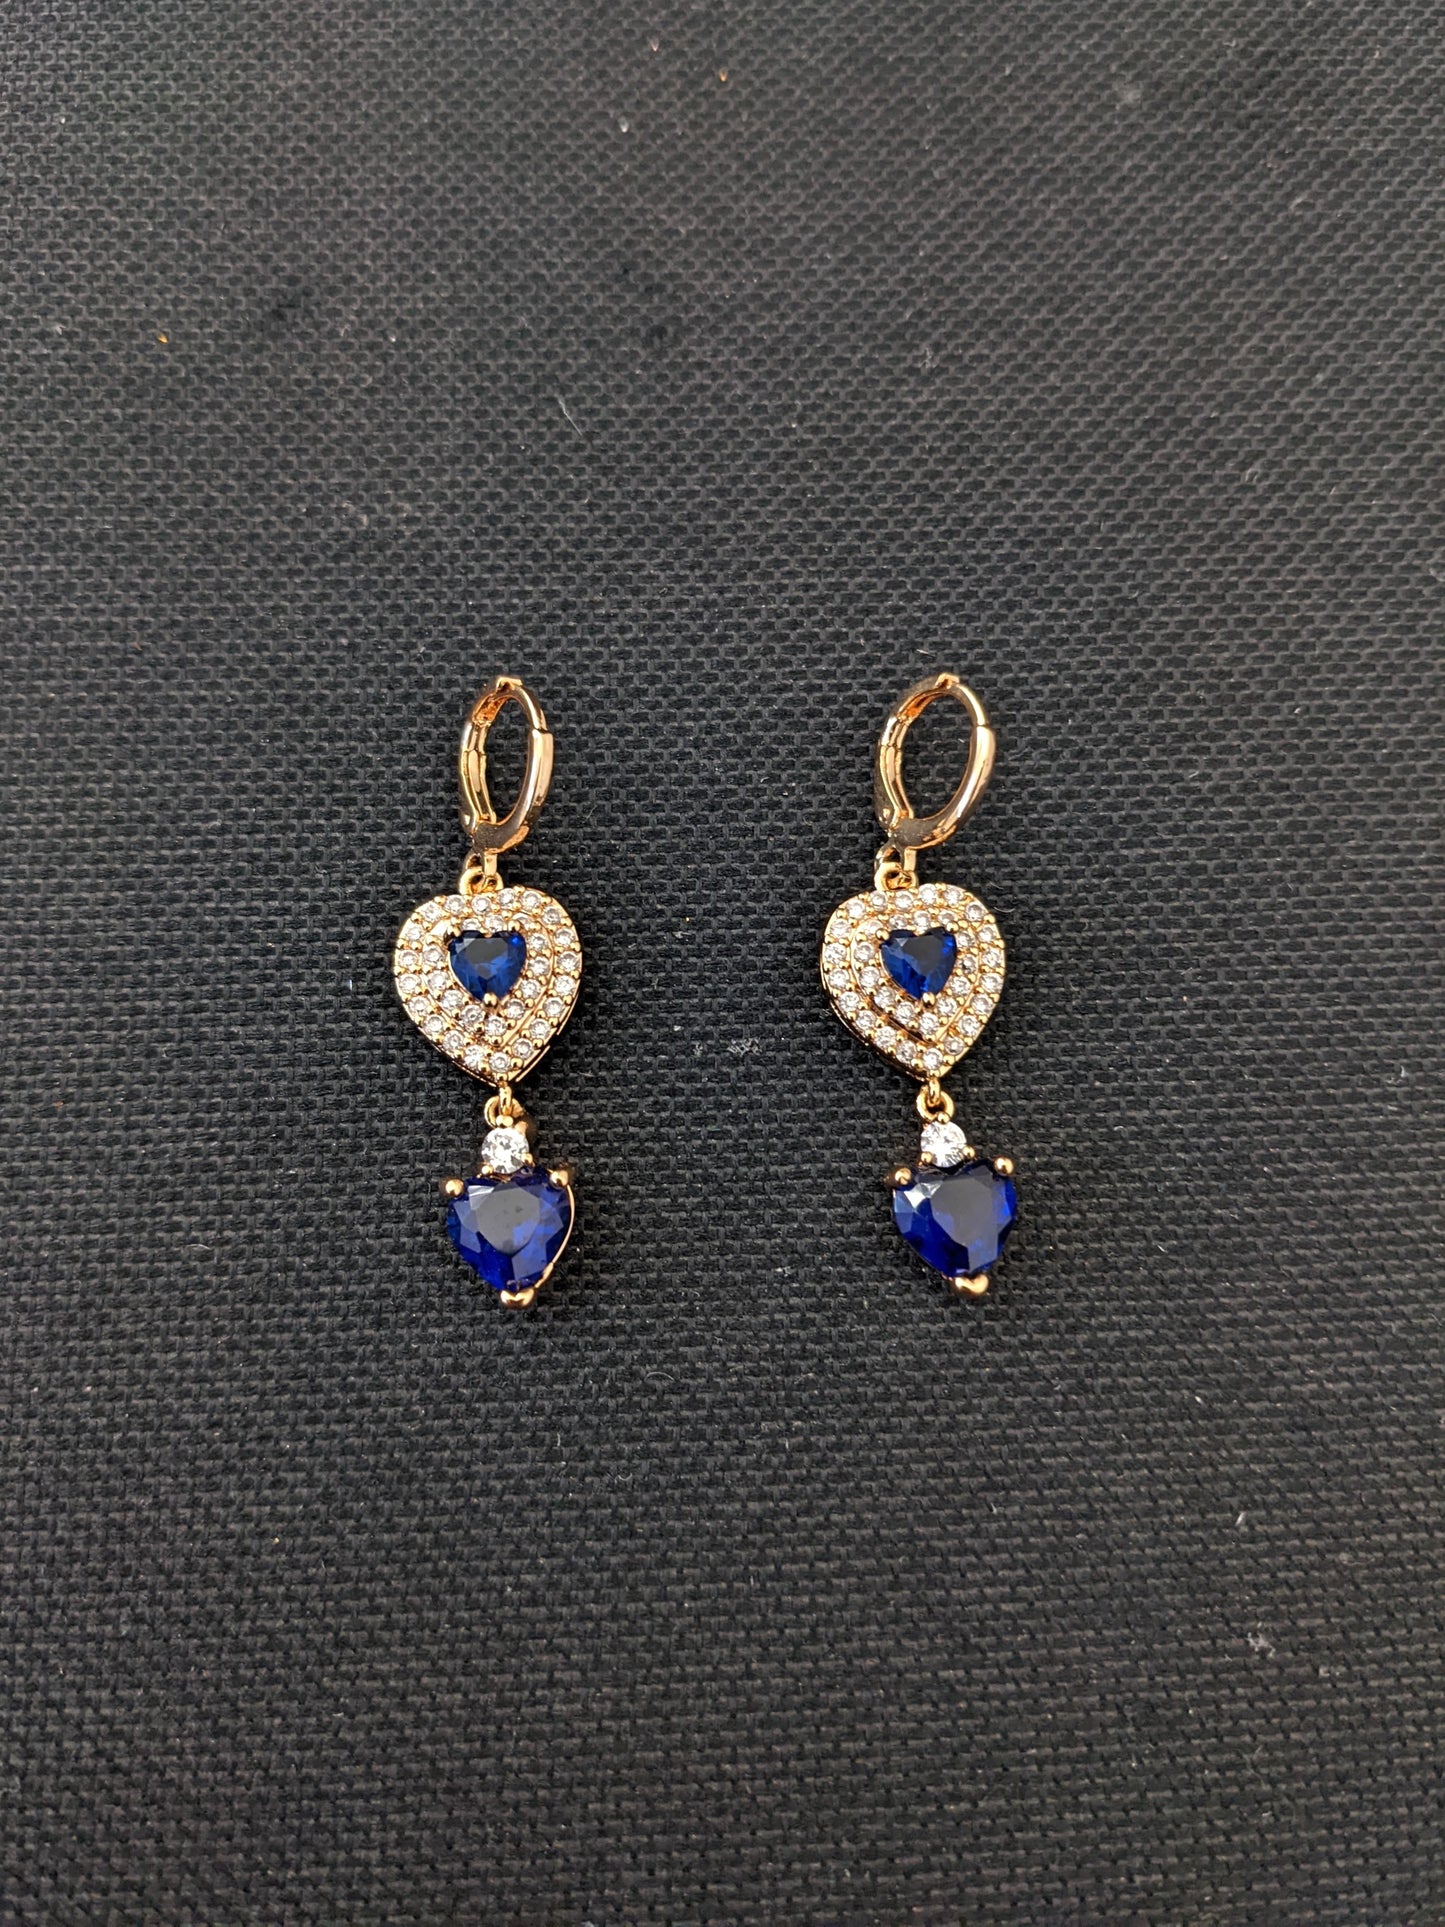 Multiple heart design CZ stone ring style drop earrings